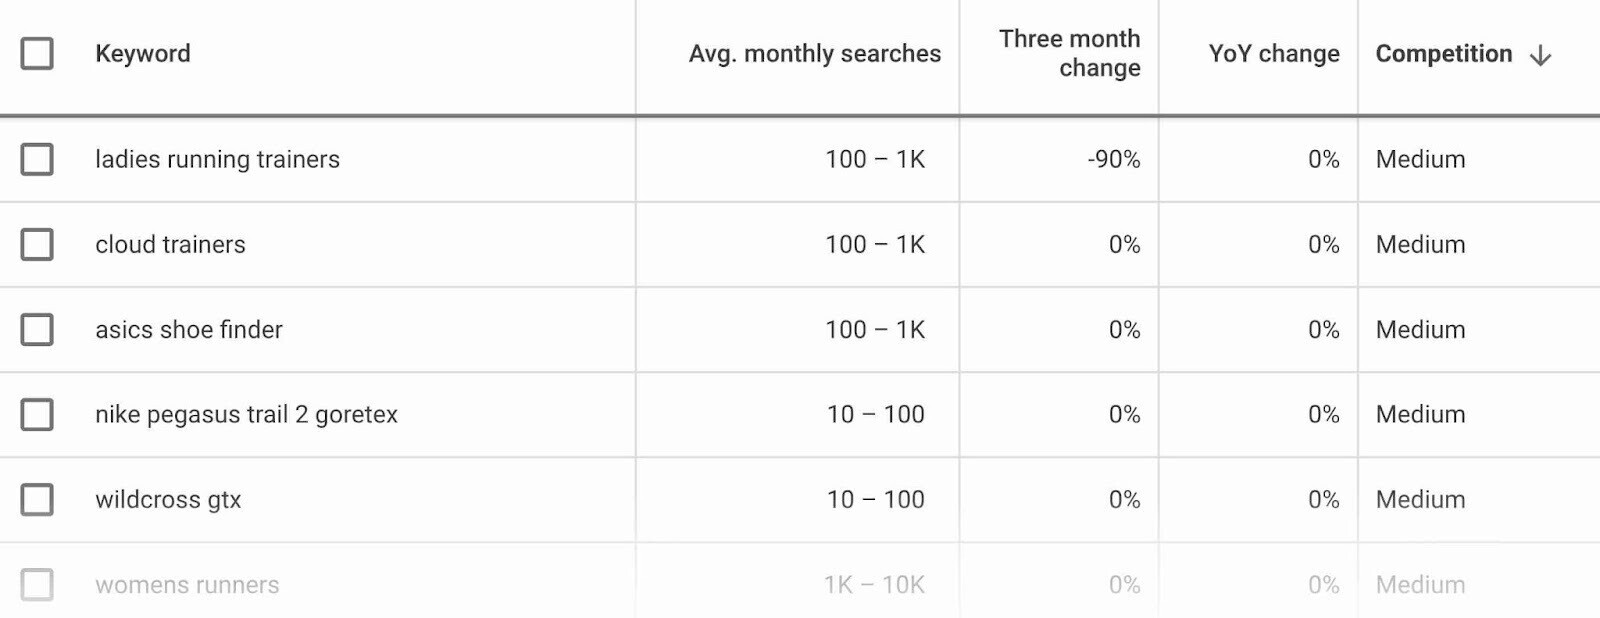 按每月平均搜索量和竞争程度较低的目标关键字对列表进行排序